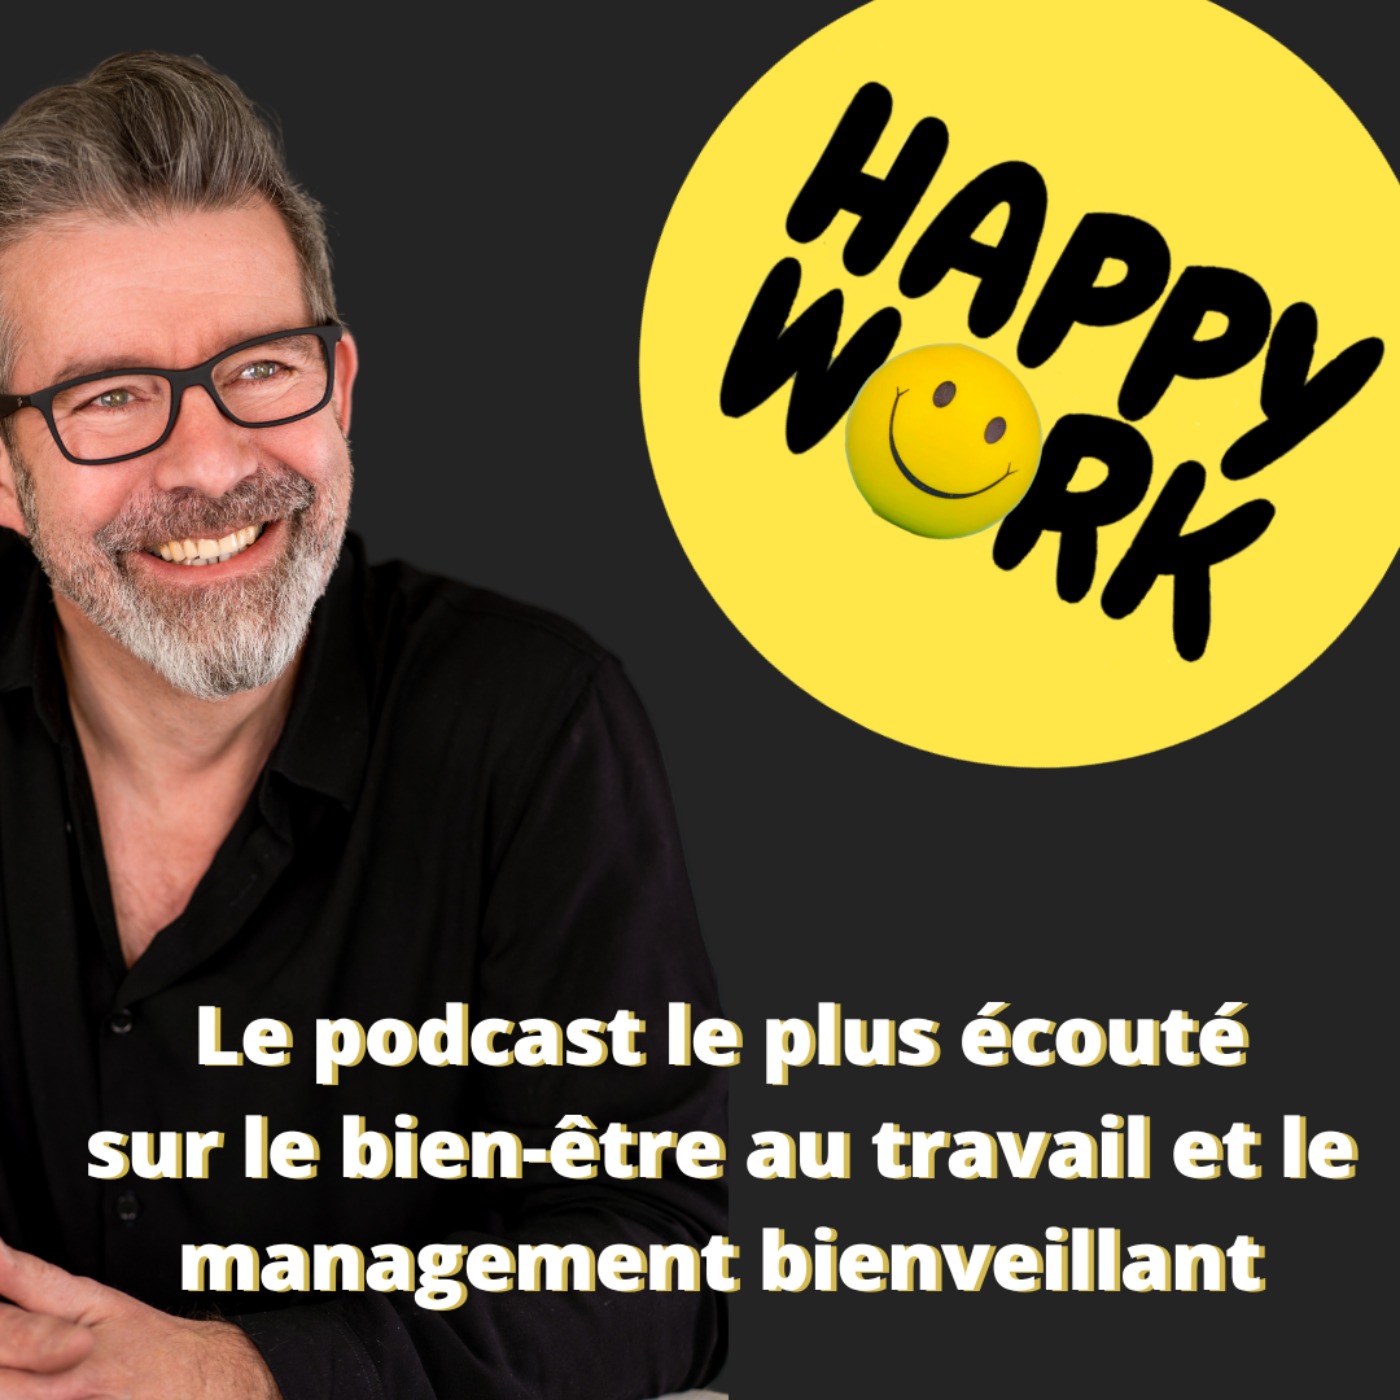 Happy Work - Bien-être au travail et management bienveillant:Gaël Chatelain-Berry